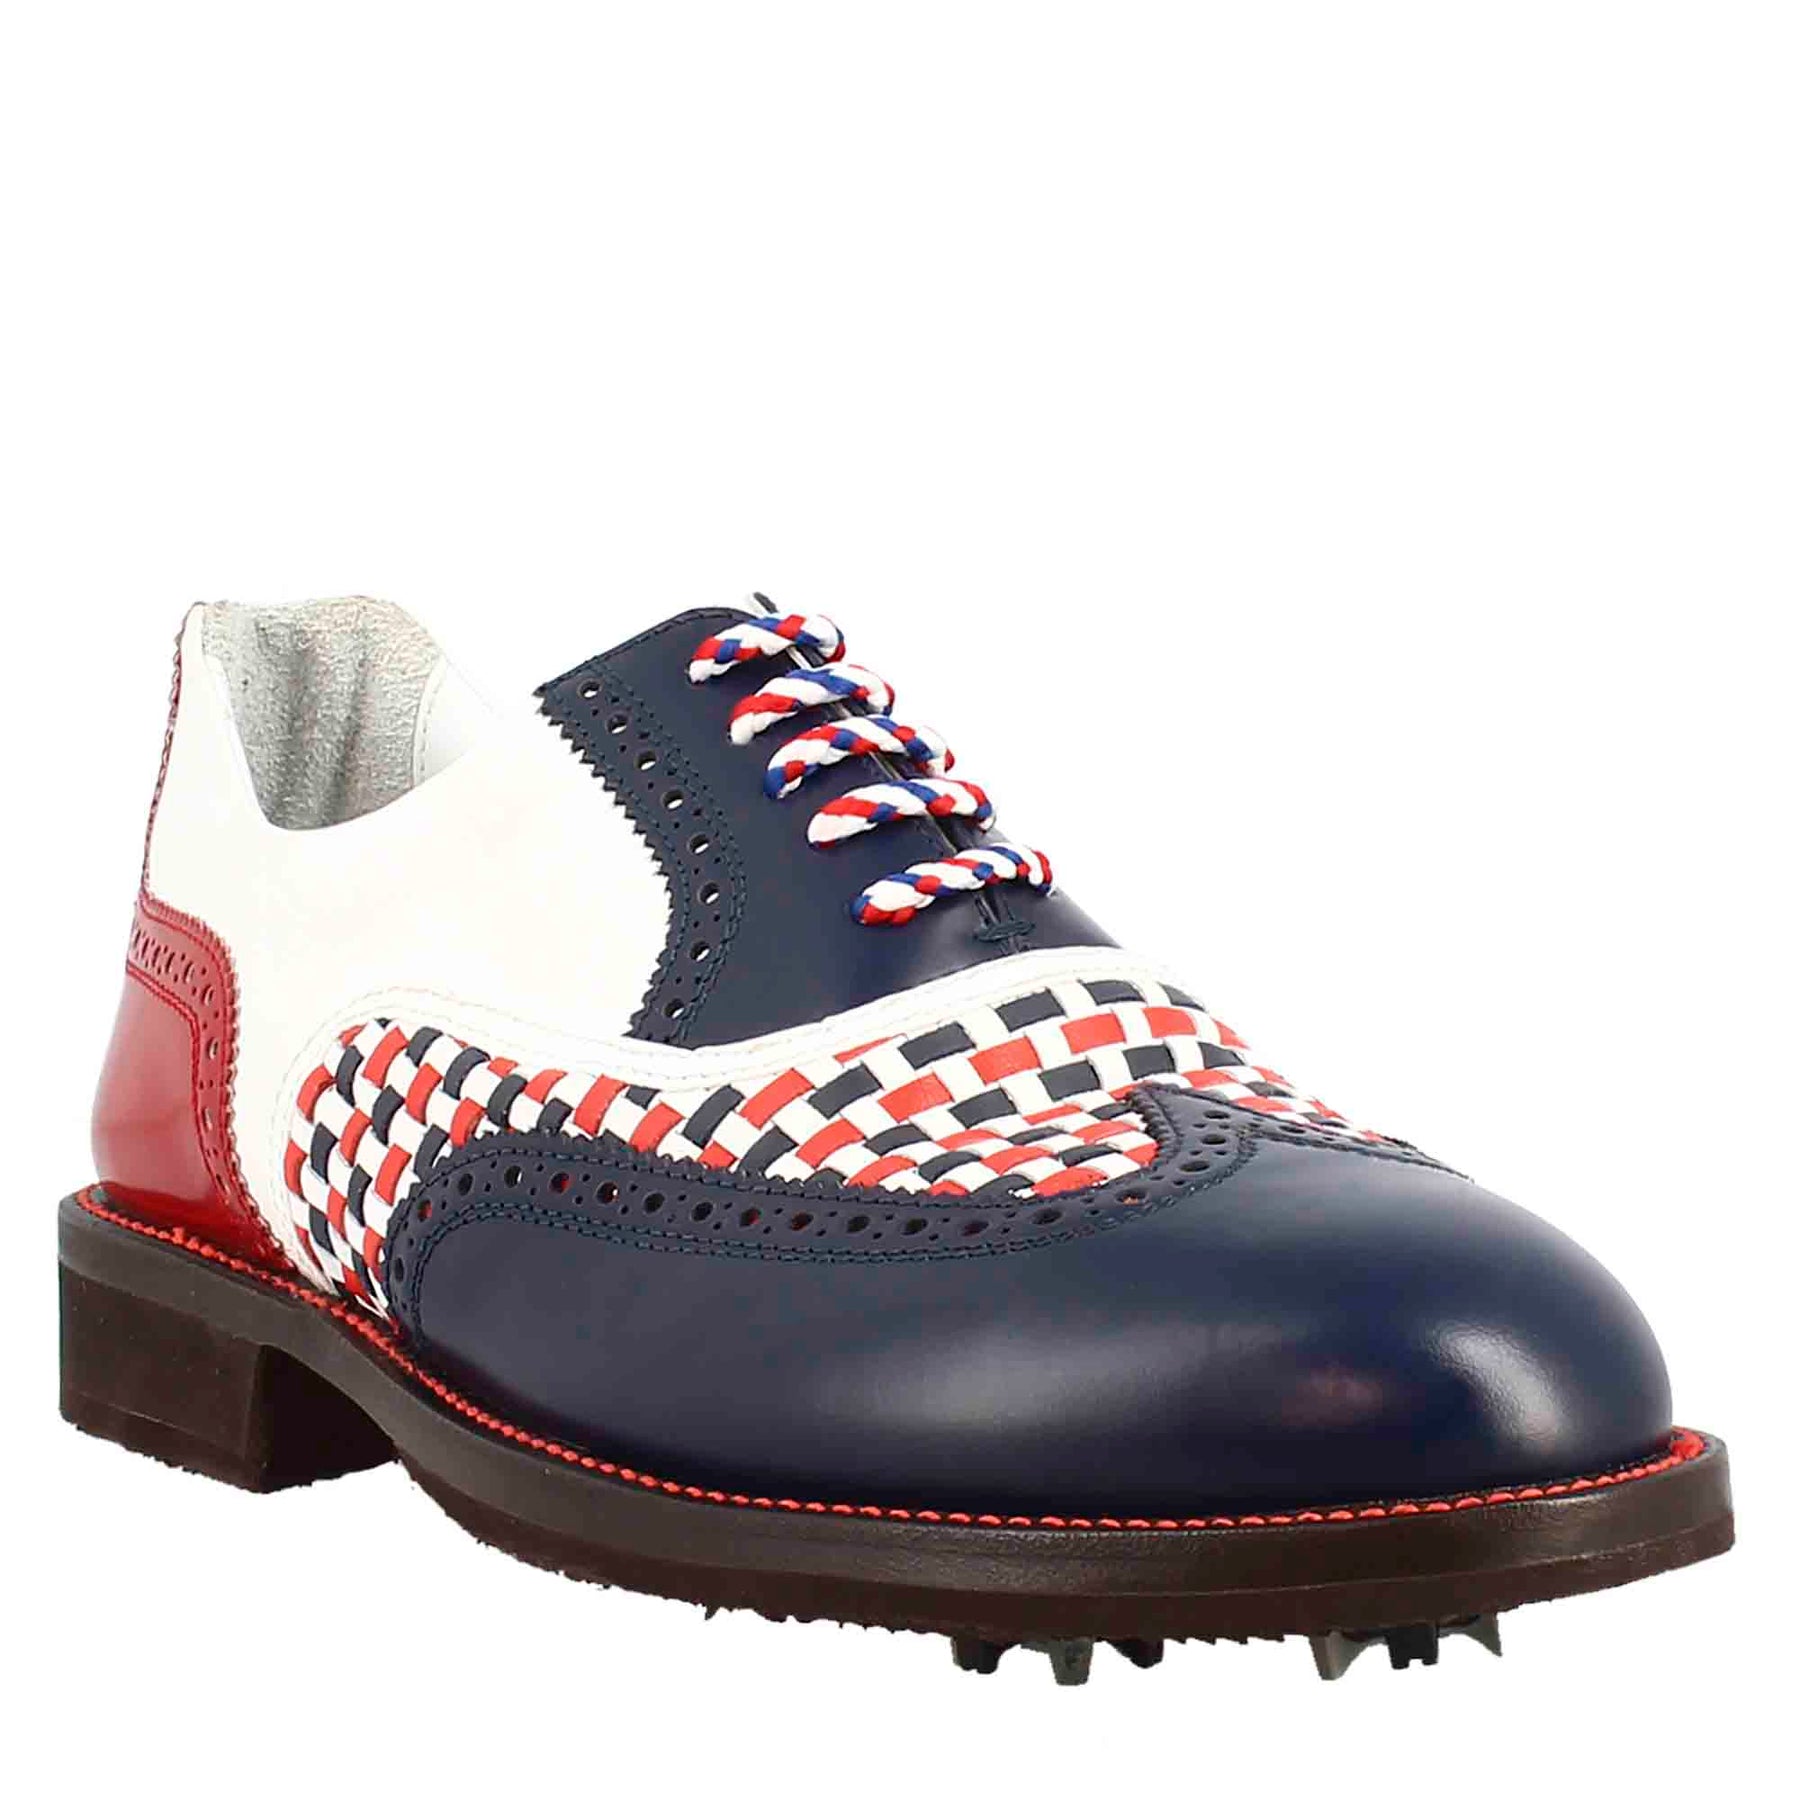 Chaussures de golf pour femme faites à la main en cuir pleine fleur bleu crocodile blanc